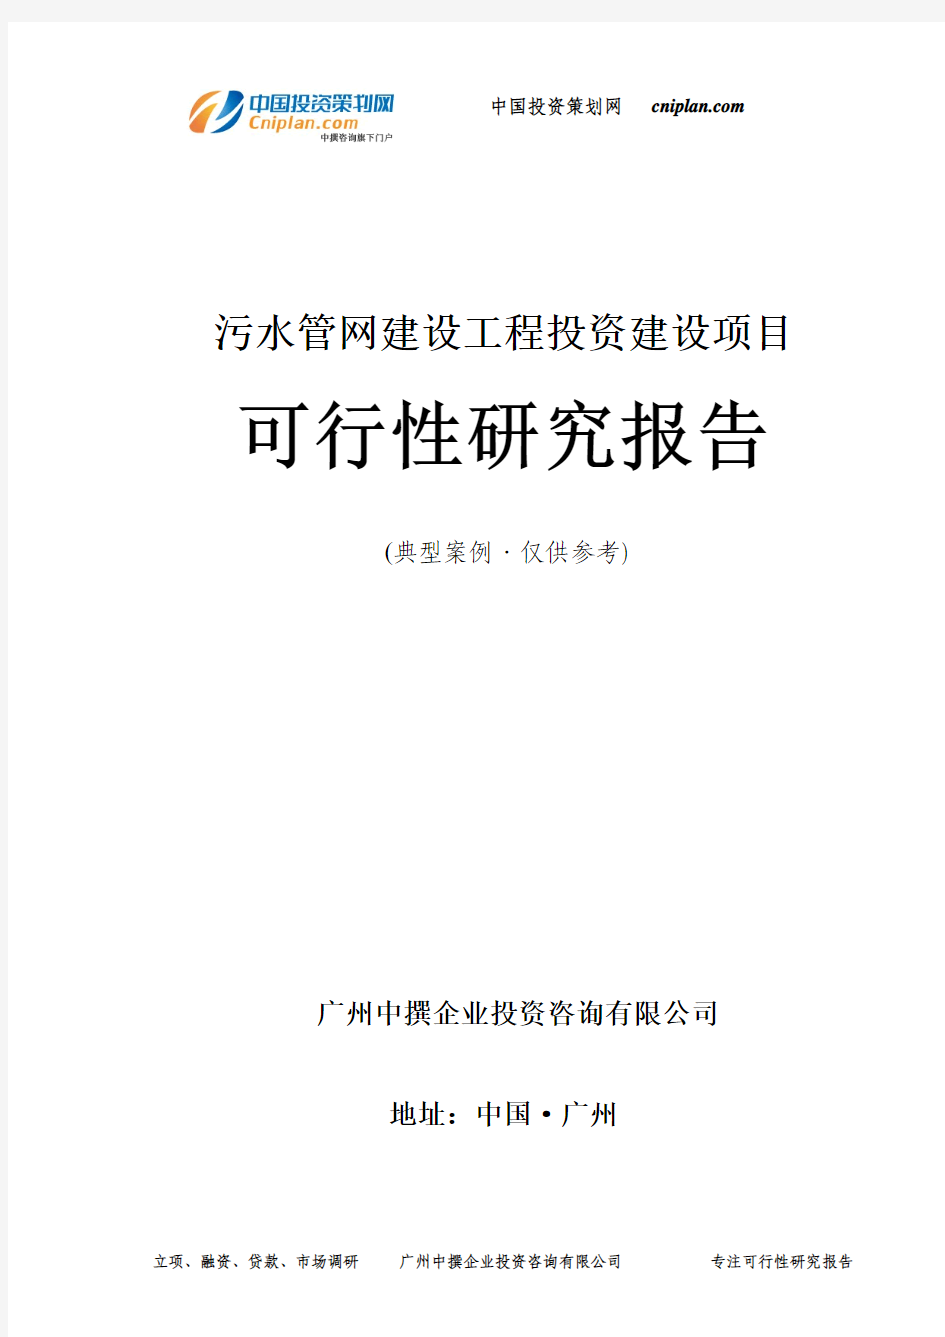 污水管网建设工程投资建设项目可行性研究报告-广州中撰咨询